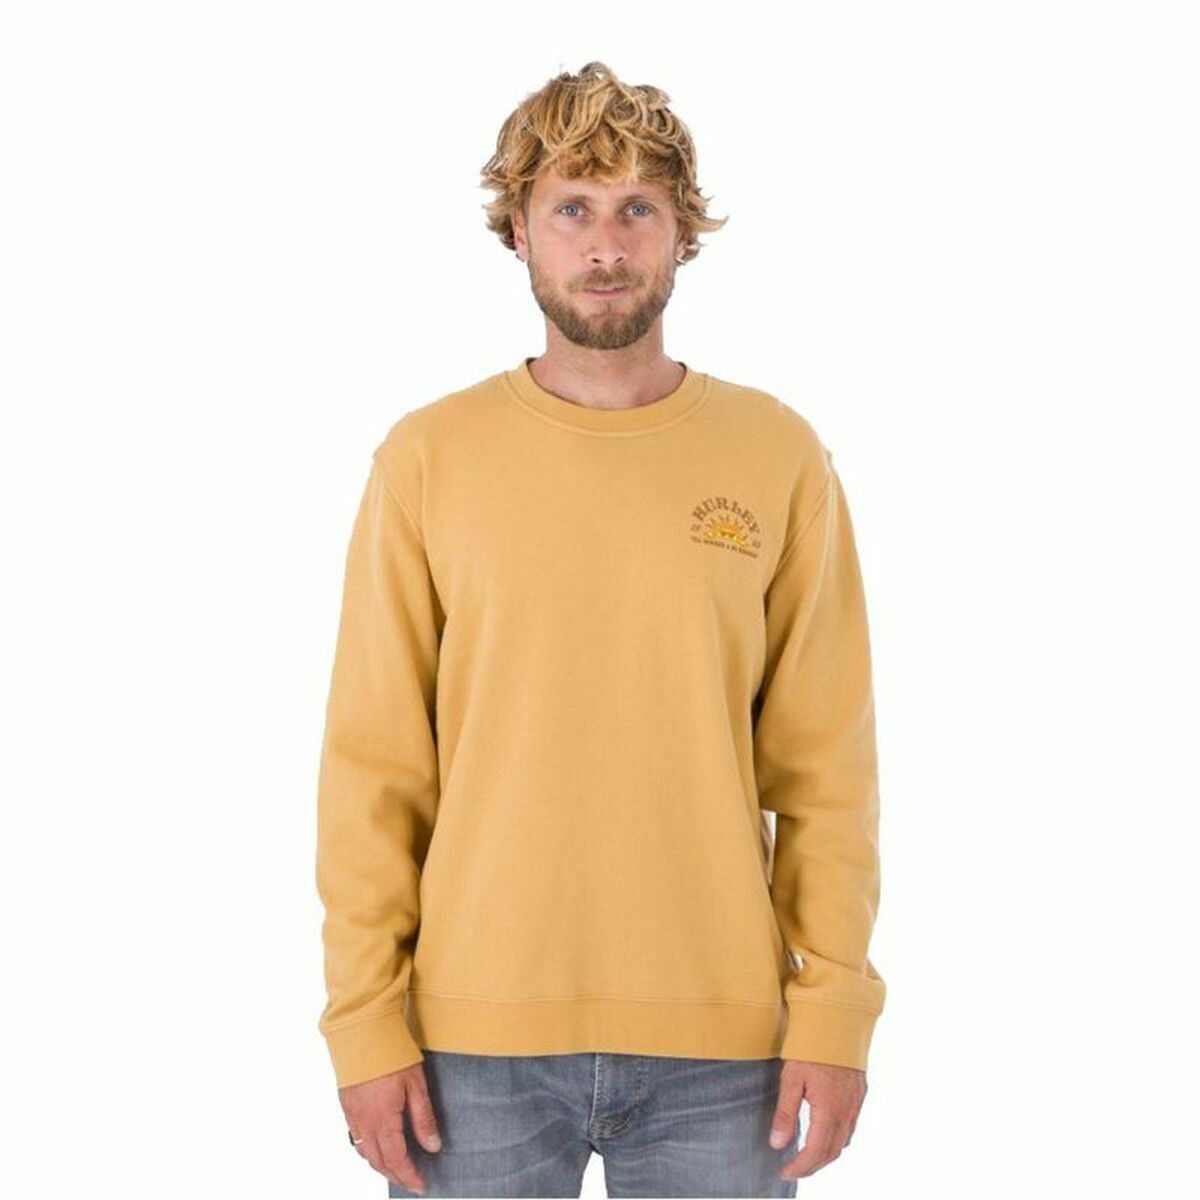 Kaufe Herren Sweater ohne Kapuze Hurley No Bummers Ocker bei AWK Flagship um € 59.00